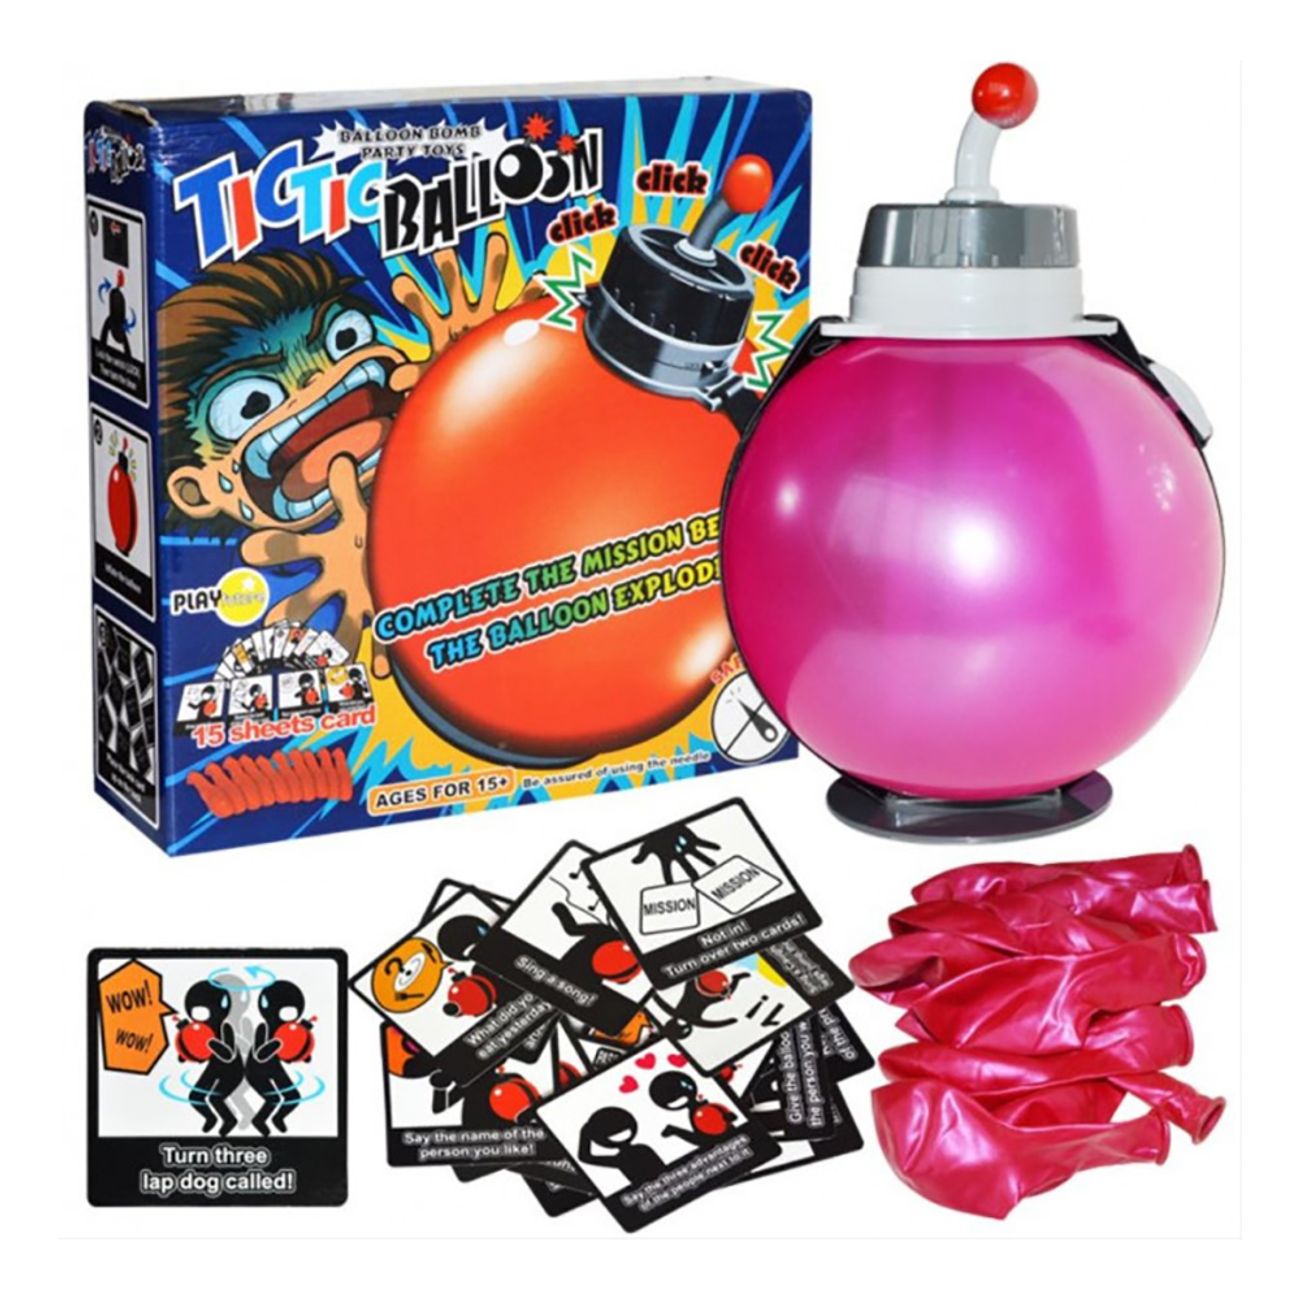 tictic-ballon-bomb-spel-82796-2